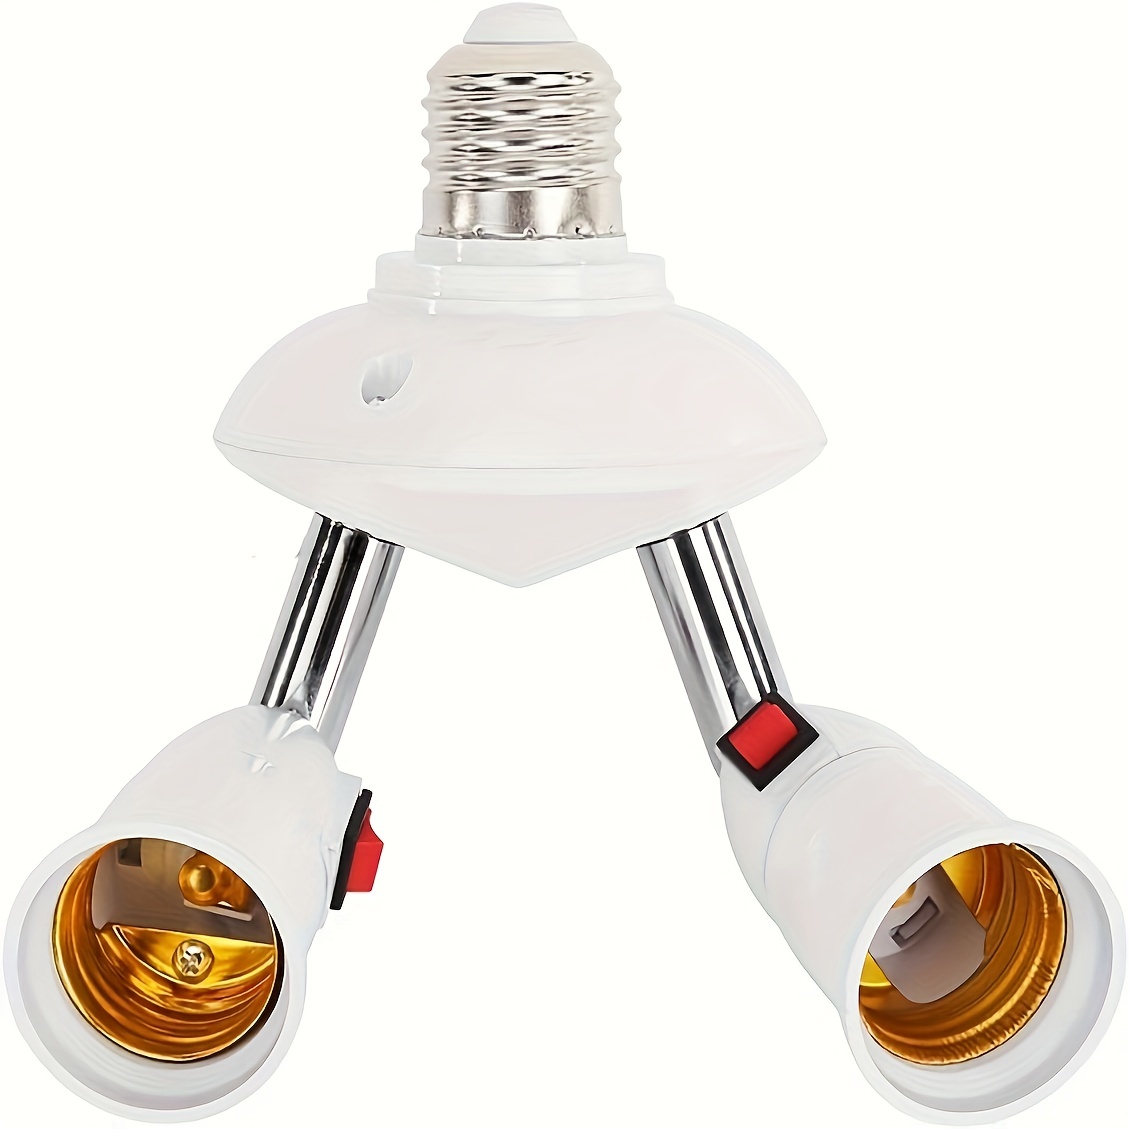 Adaptateur Dampoule E27 Ignifuge PBT, Support De Lampe, Conversion